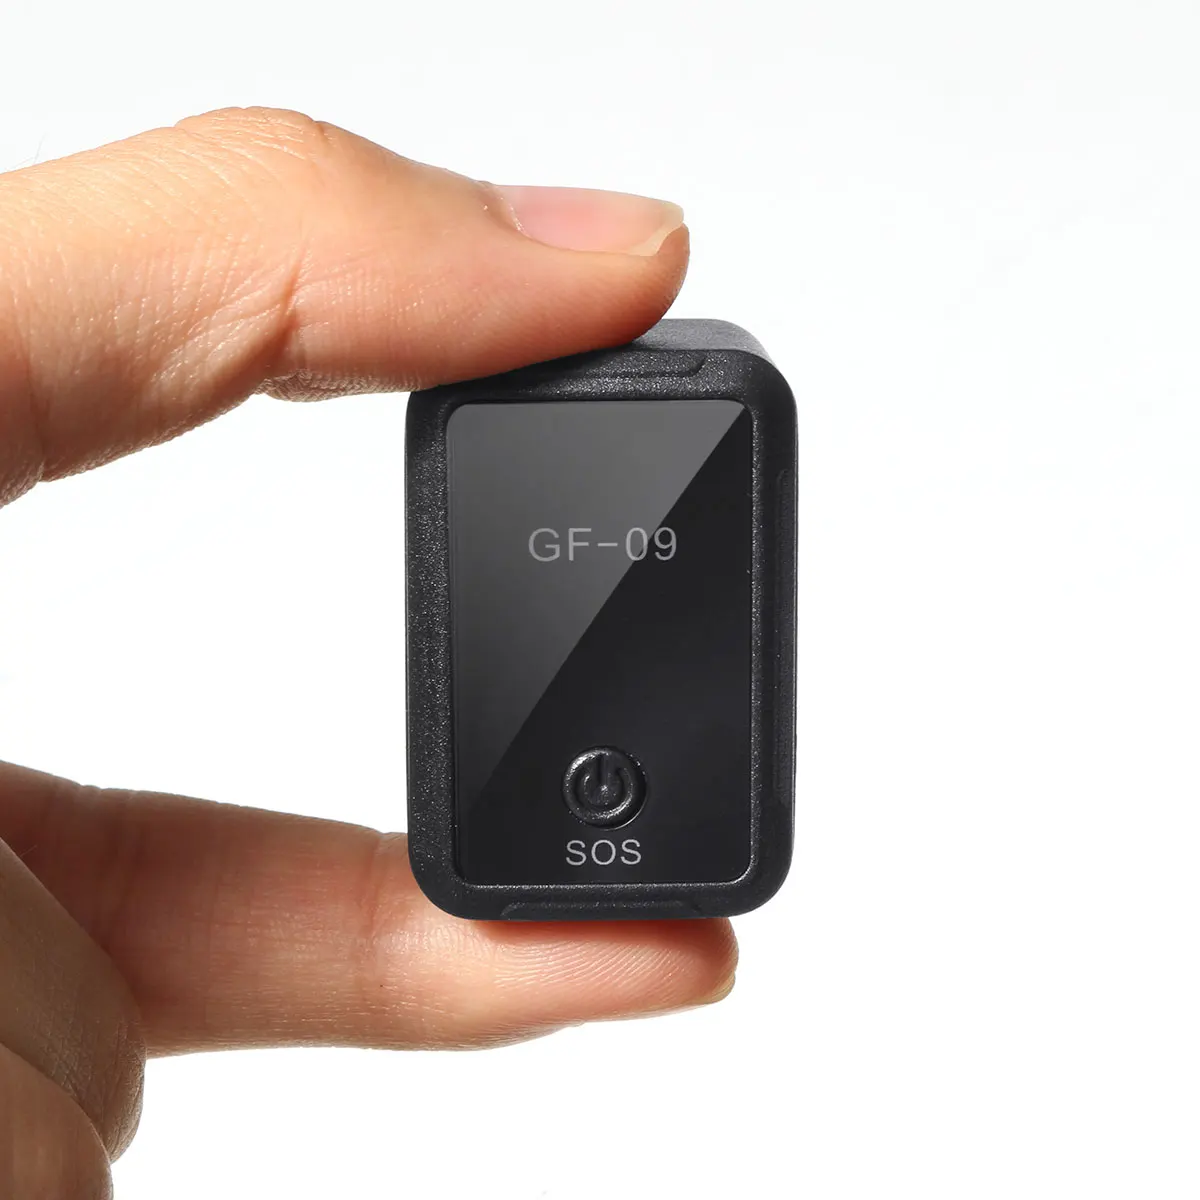 Мини GPS трекеры GF09 Магнитный GPRS Определитель местоположения приложение управление противоугонное устройство локатор диктофон для автомобиля/человека